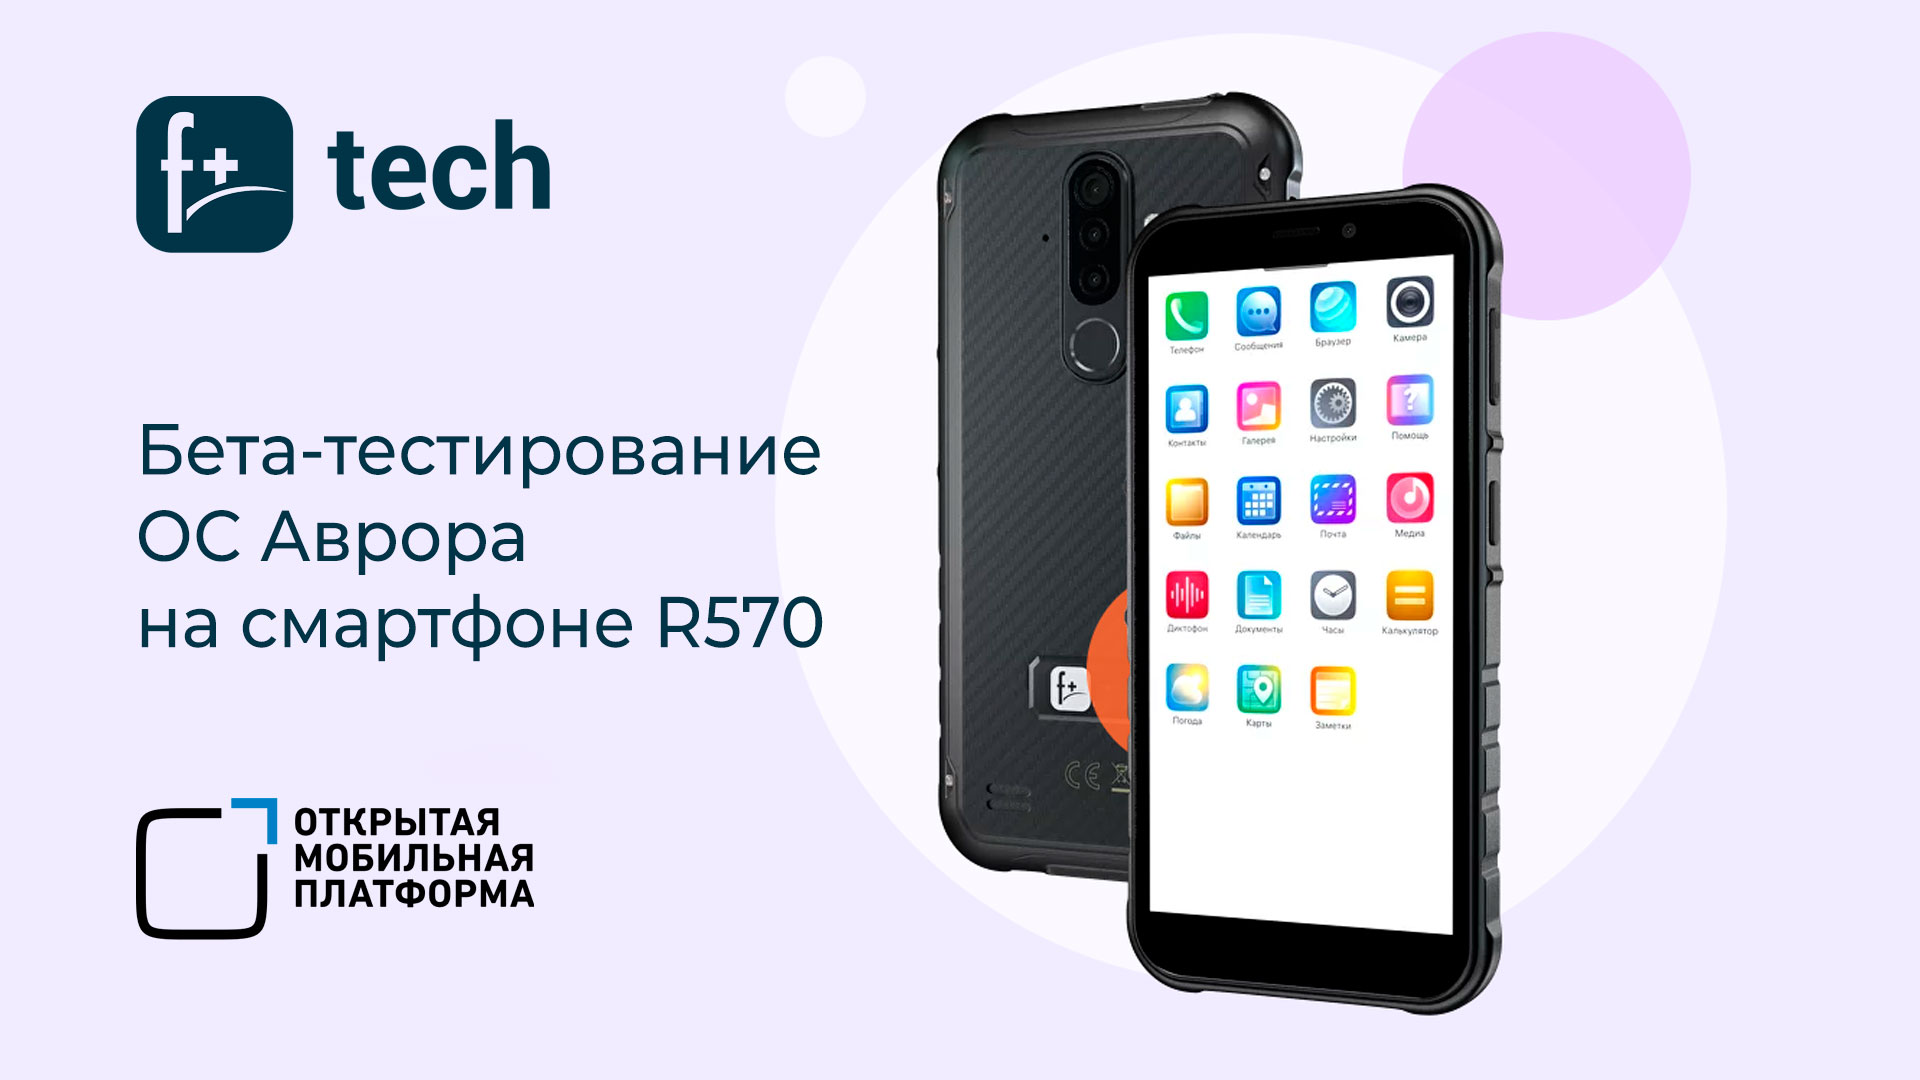 Российский смартфон R570 от F+ tech включен в бета-тестирование ОС Аврора